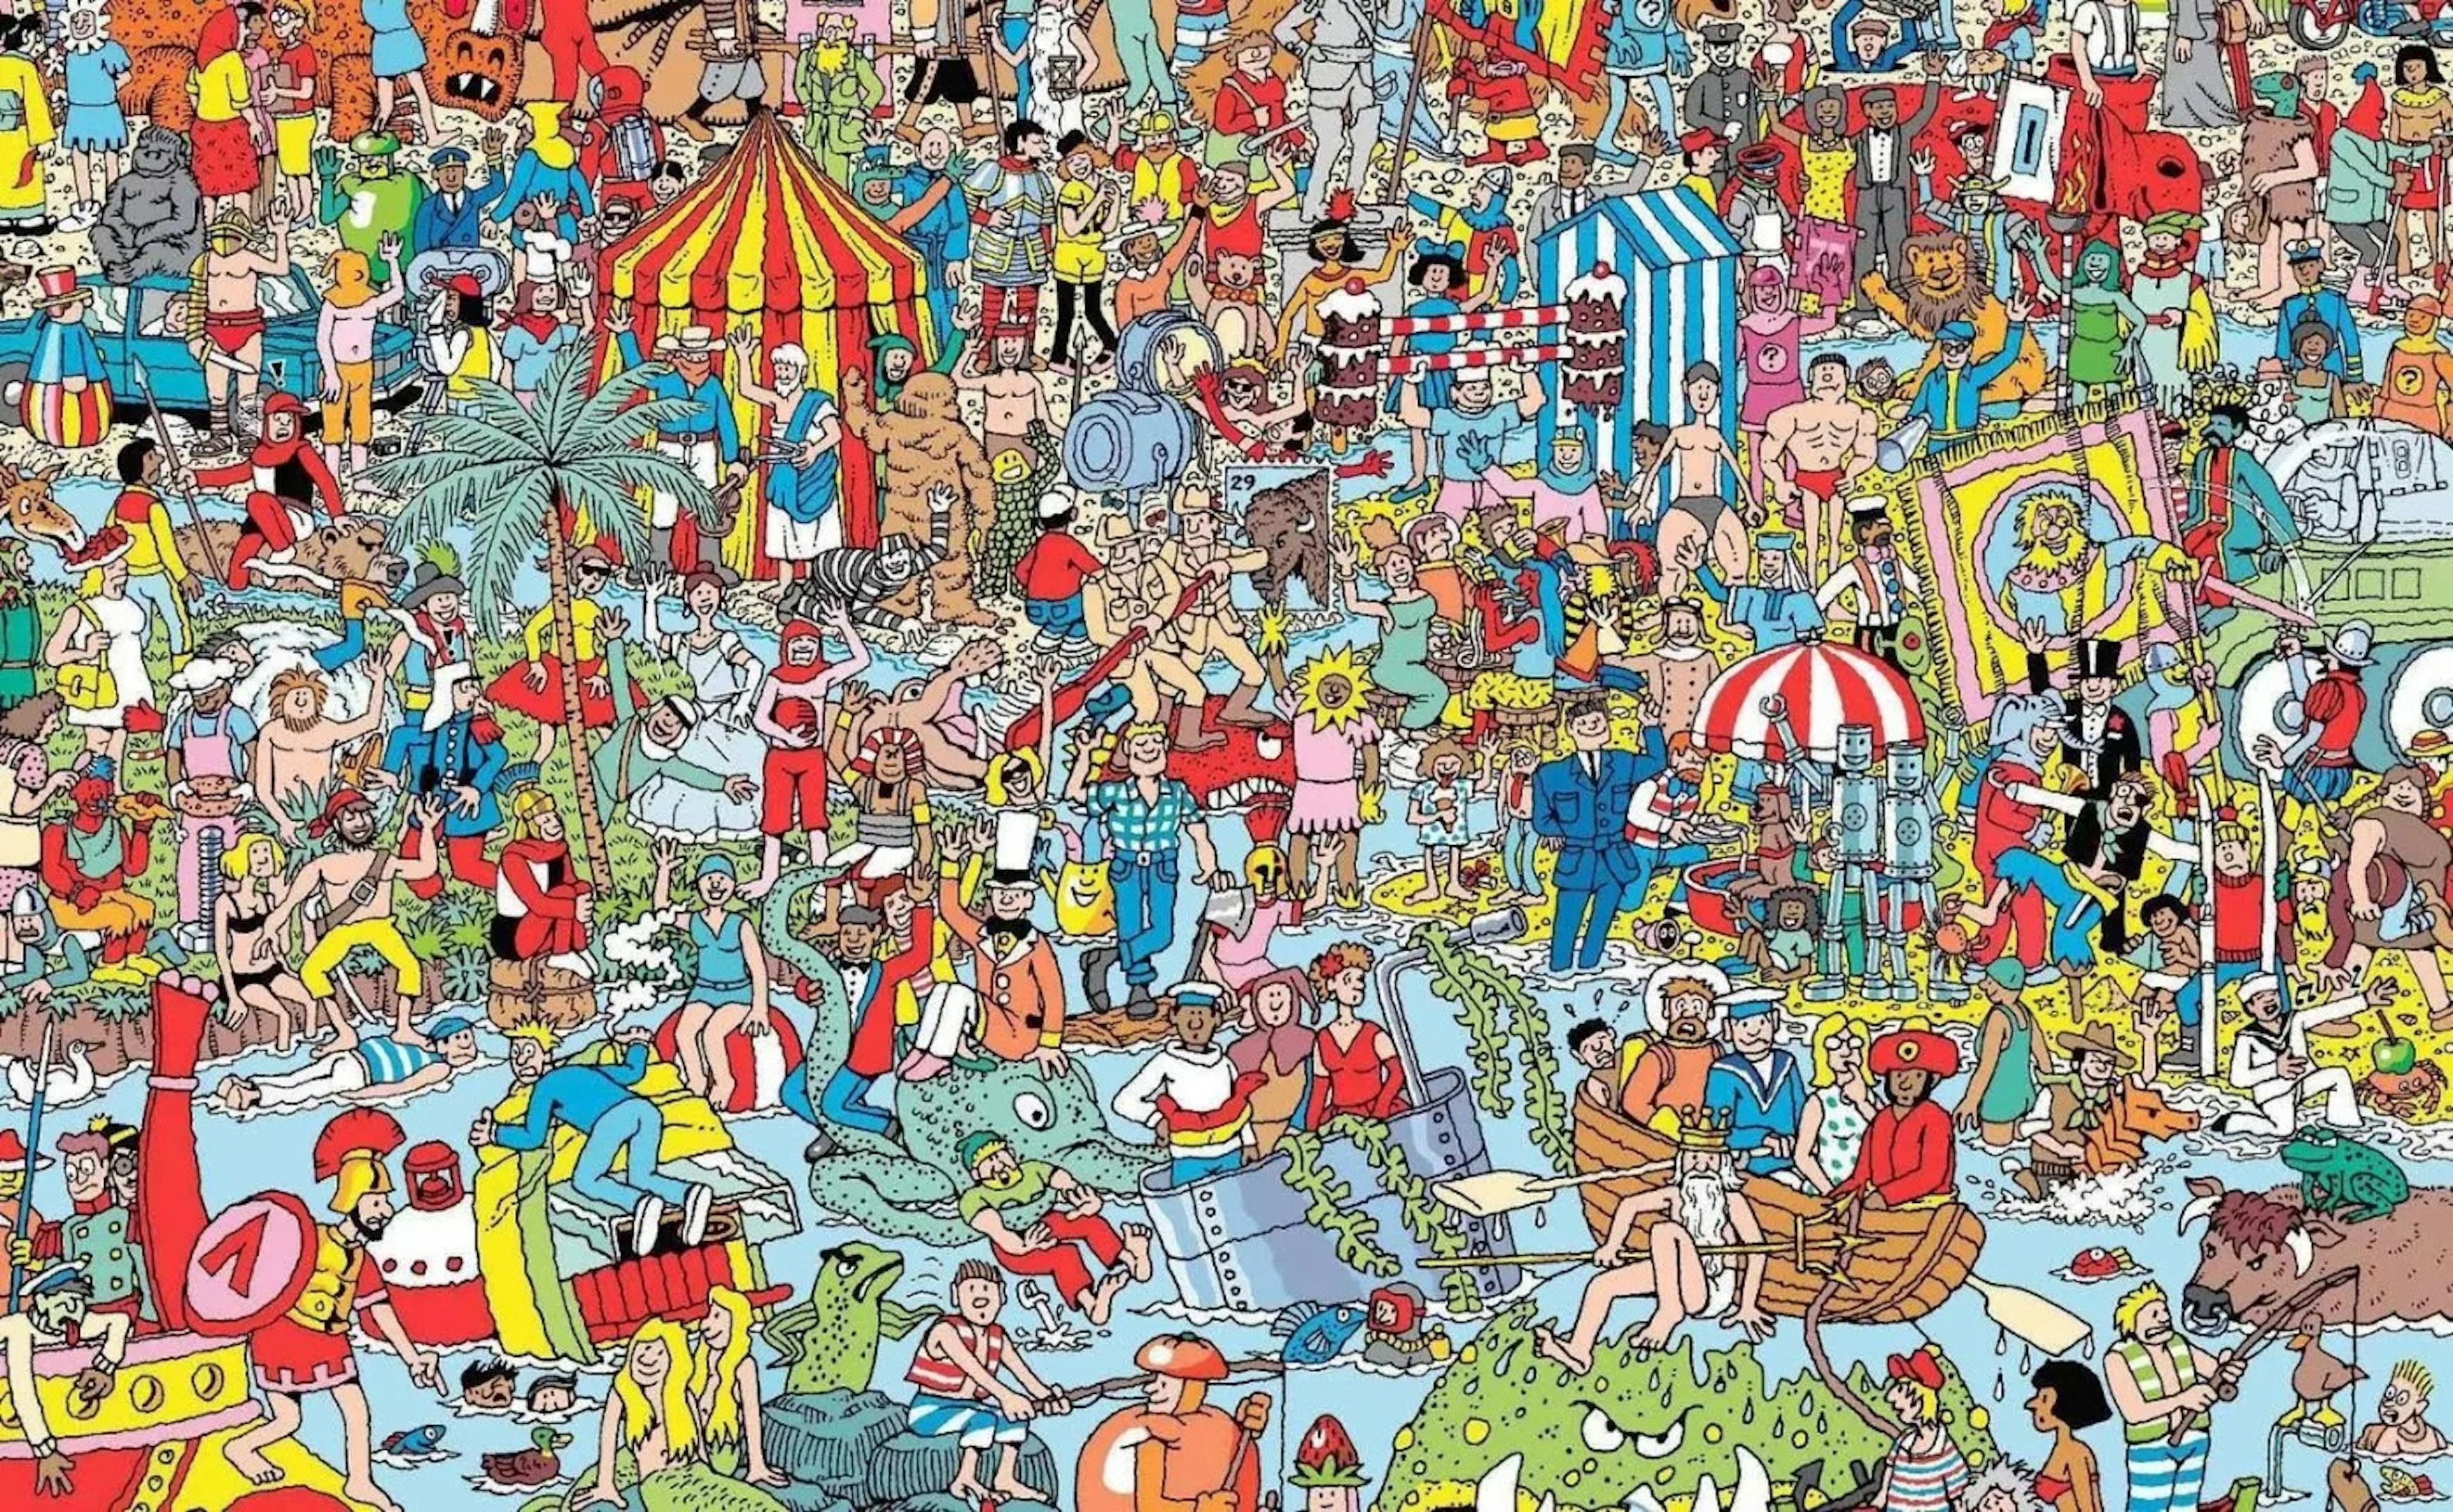 Avez-vous trouvé Wally sur la photo ?